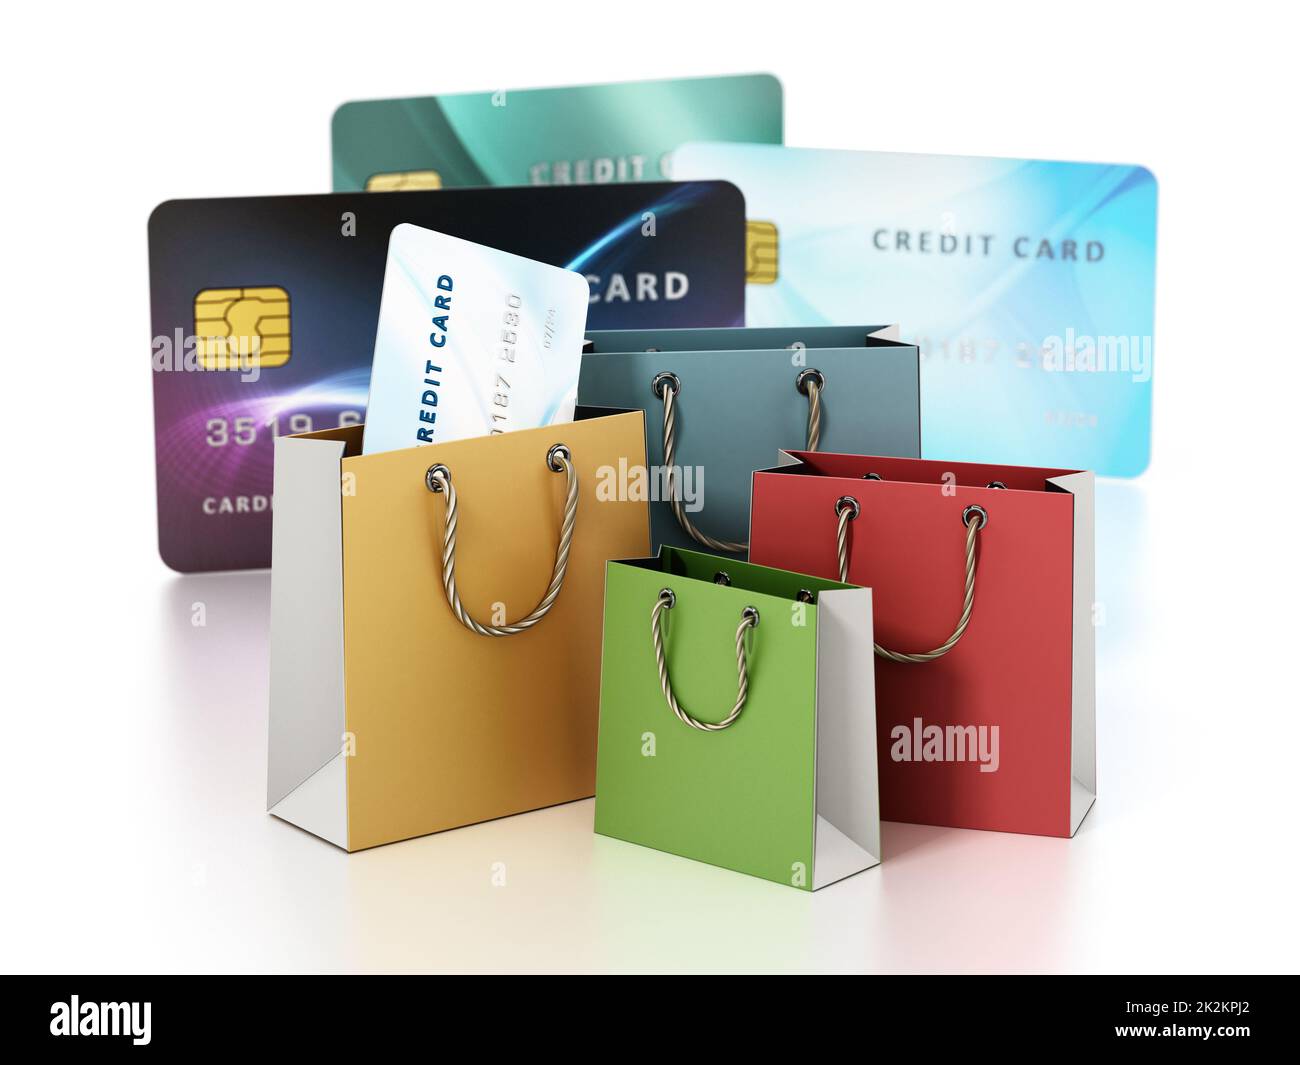 Sacs de shopping et cartes de crédit génériques isolées sur fond blanc. Toutes les informations figurant sur les cartes sont fictives. 3D illustration Banque D'Images